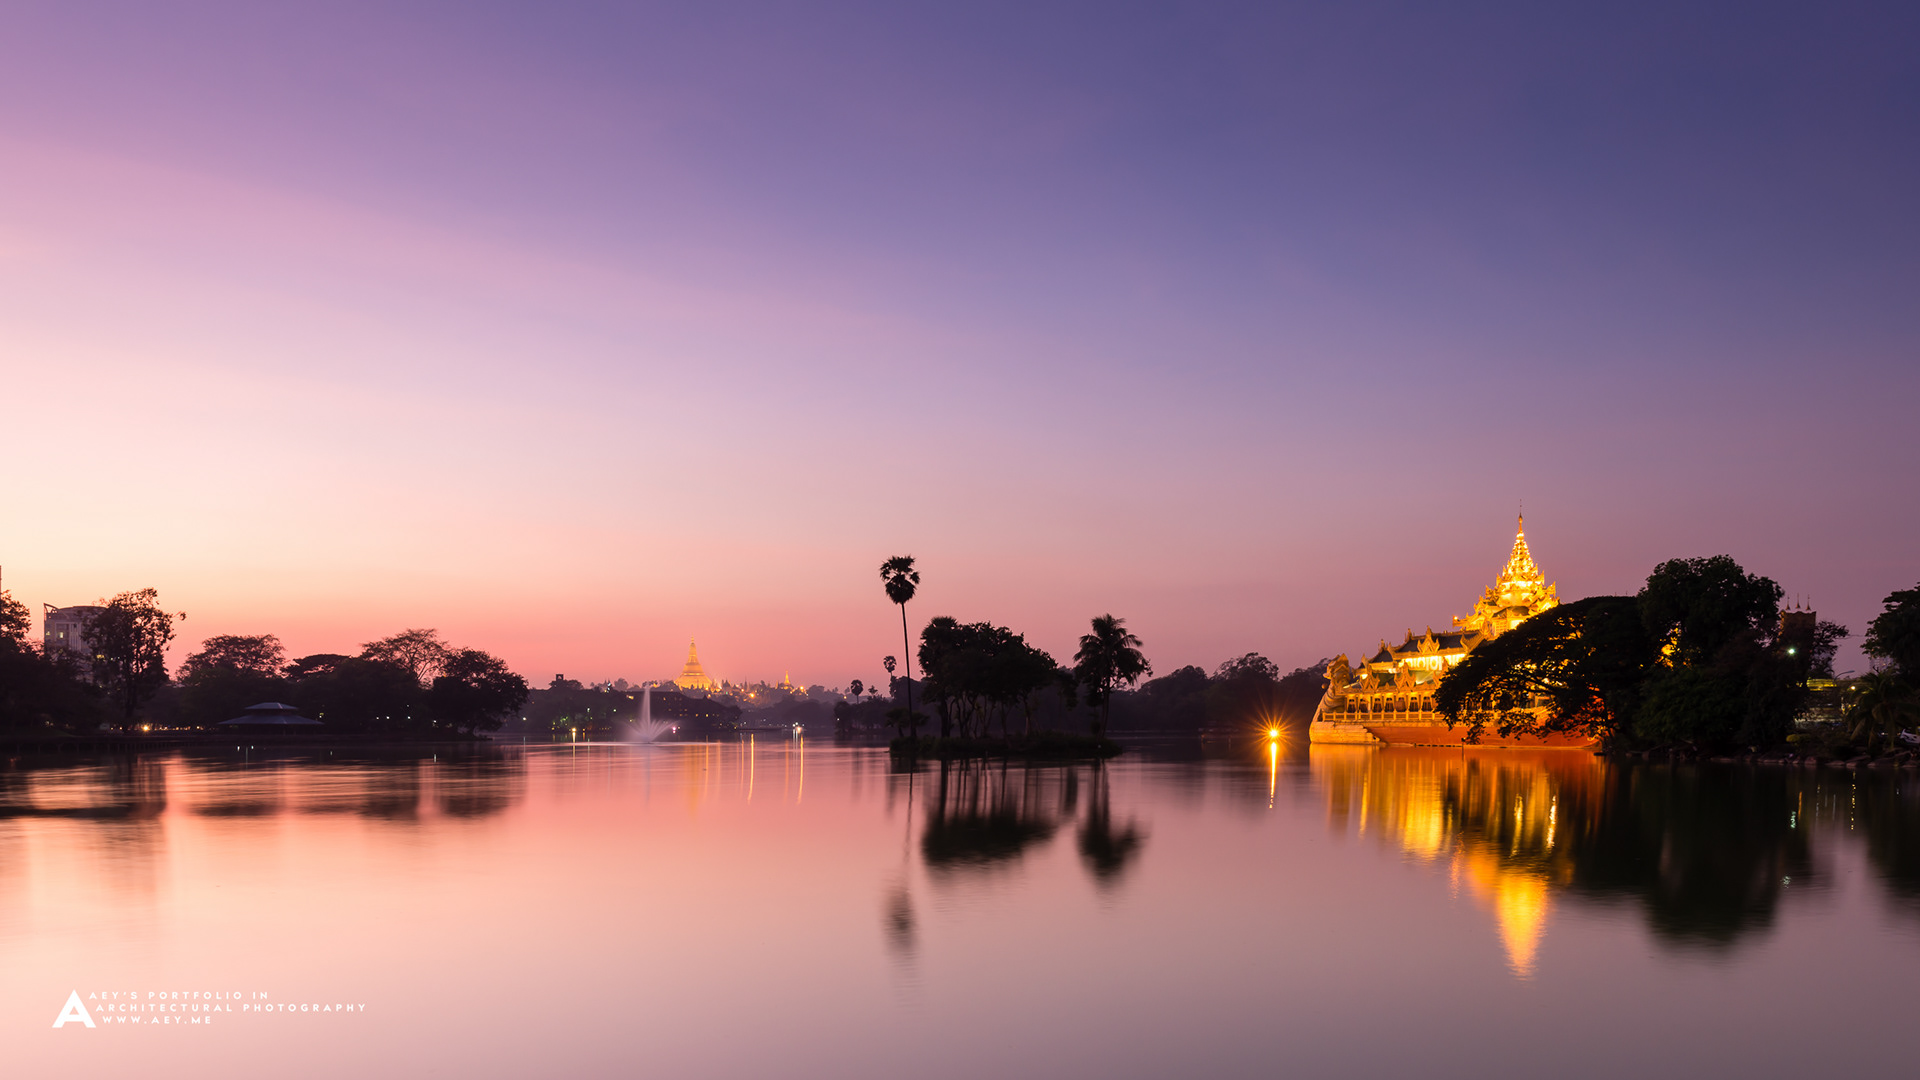 Kandawgyi Lake and The Karaweik with the Shwedagon pagoda in background, Yangon, Myanmar